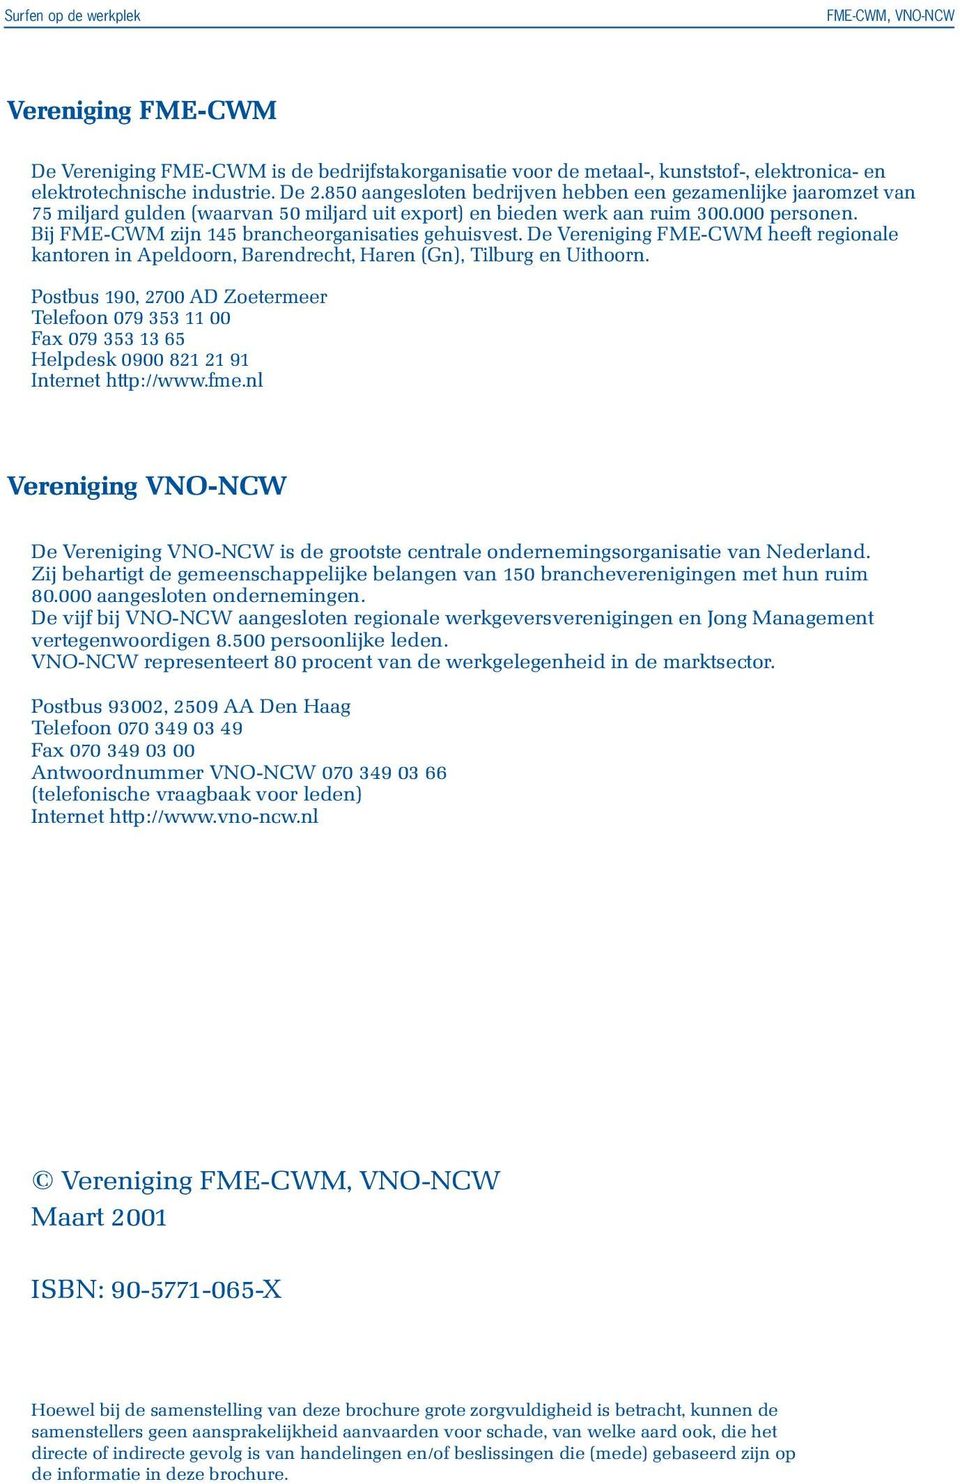 Bij FME-CWM zijn 145 brancheorganisaties gehuisvest. De Vereniging FME-CWM heeft regionale kantoren in Apeldoorn, Barendrecht, Haren (Gn), Tilburg en Uithoorn.